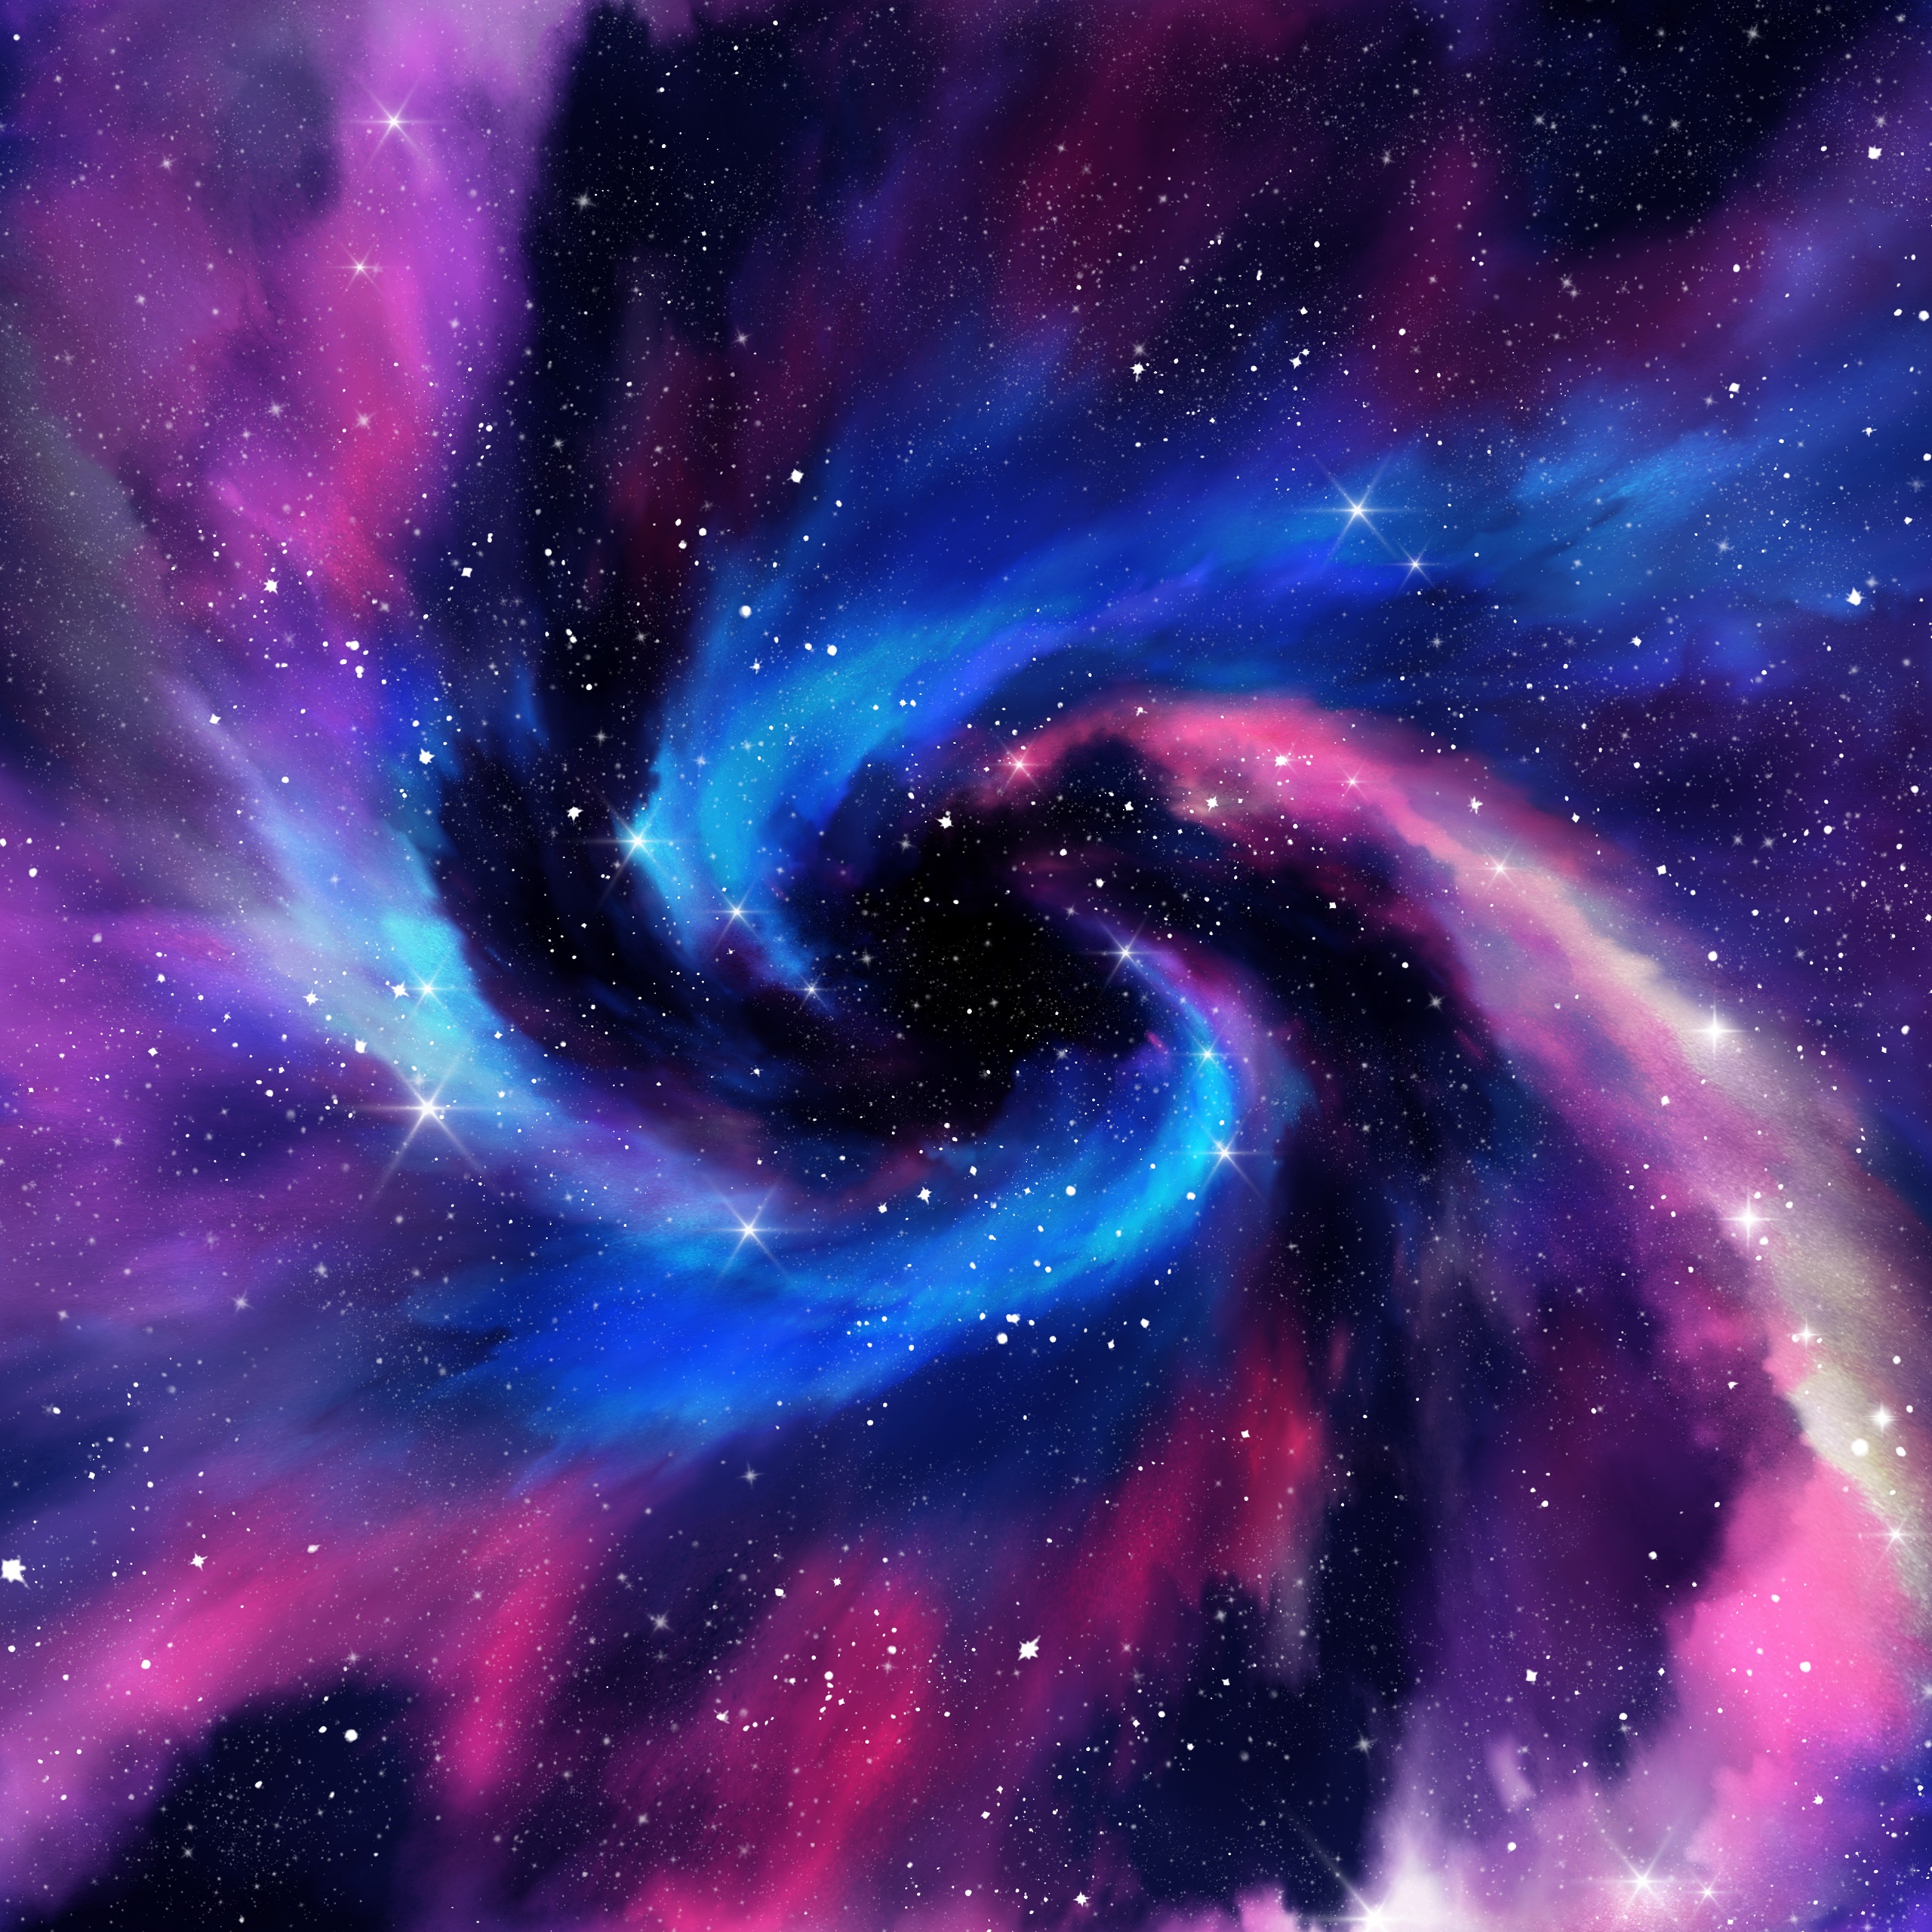 Rực rỡ, huyền diệu và đầy sức mạnh... Thiên hà xoắn ốc sẽ khiến bạn cảm thấy rất mê hoặc. Bức ảnh liên quan đến từ khóa này sẽ đưa bạn đến những vùng trời xa, nơi có những vì sao lấp lánh và những khối chất khí đầy màu sắc. Hãy khám phá thế giới tuyệt vời của thiên hà xoắn ốc với bức ảnh này!